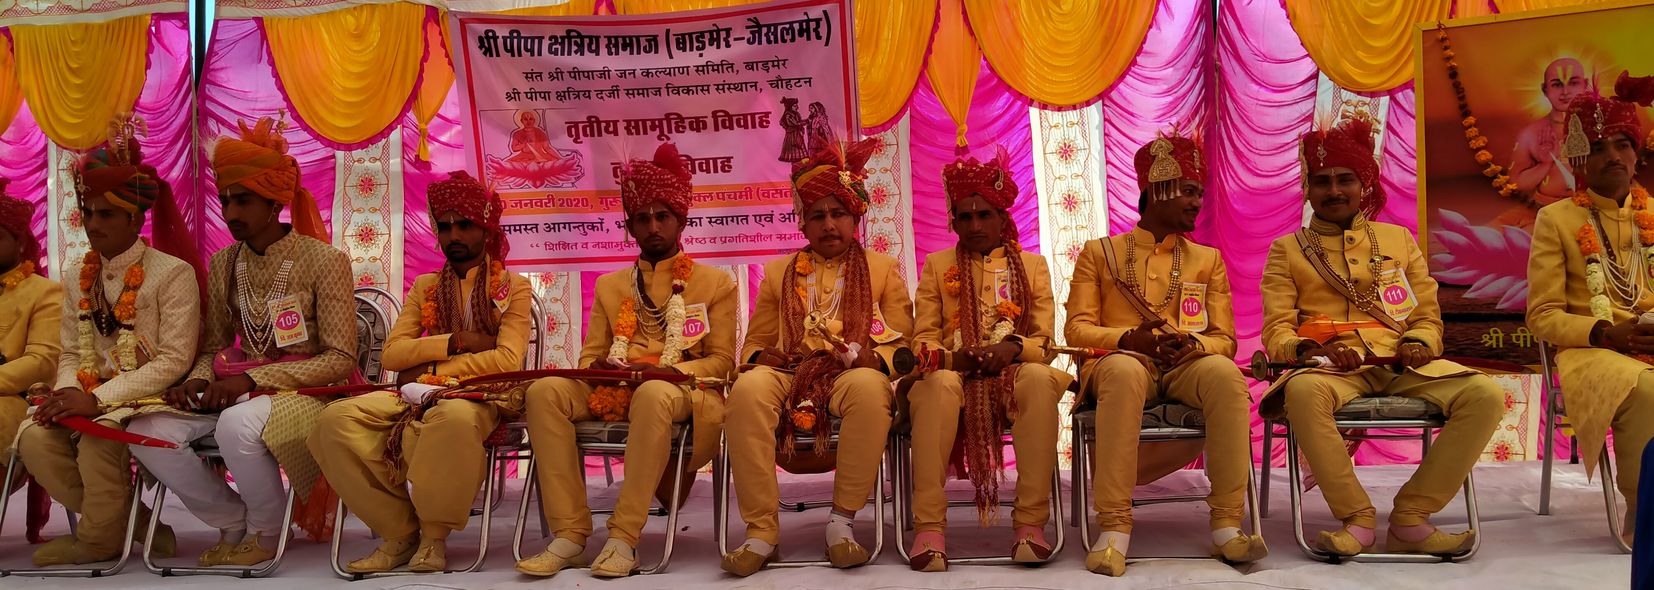 Third mass marriage of Shri Pipa Kshatriya society concluded